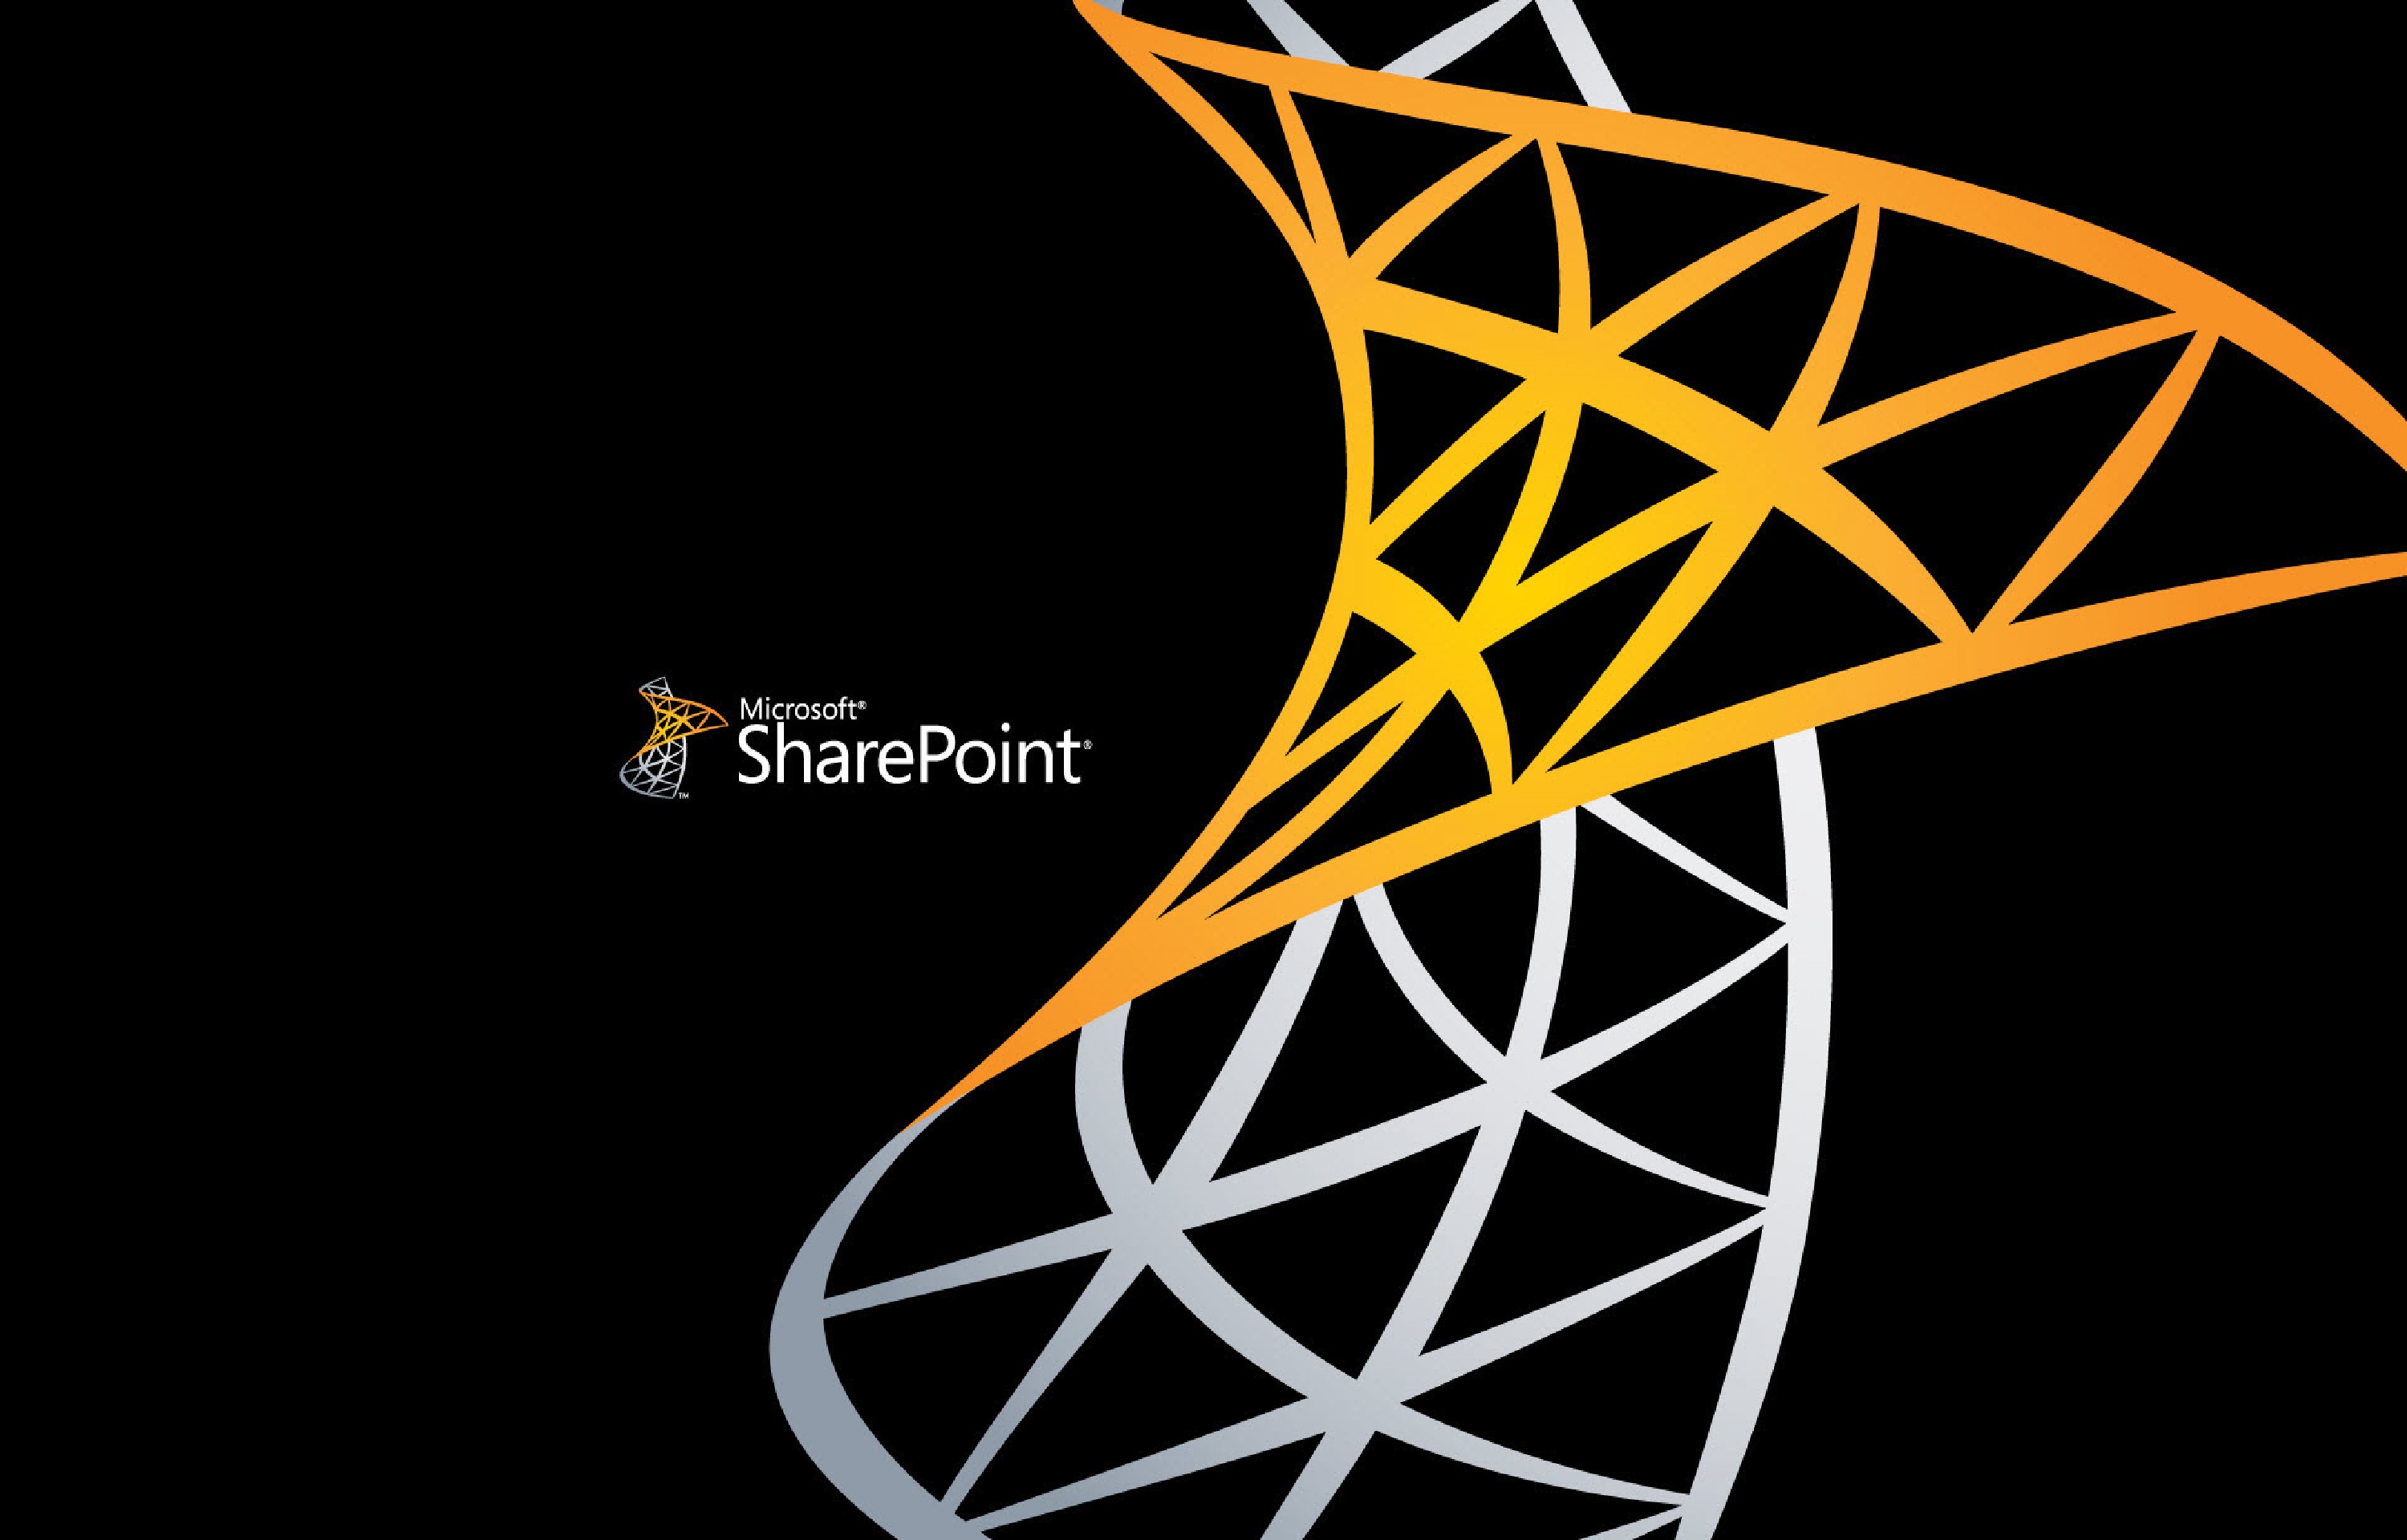 Sharepoint Development